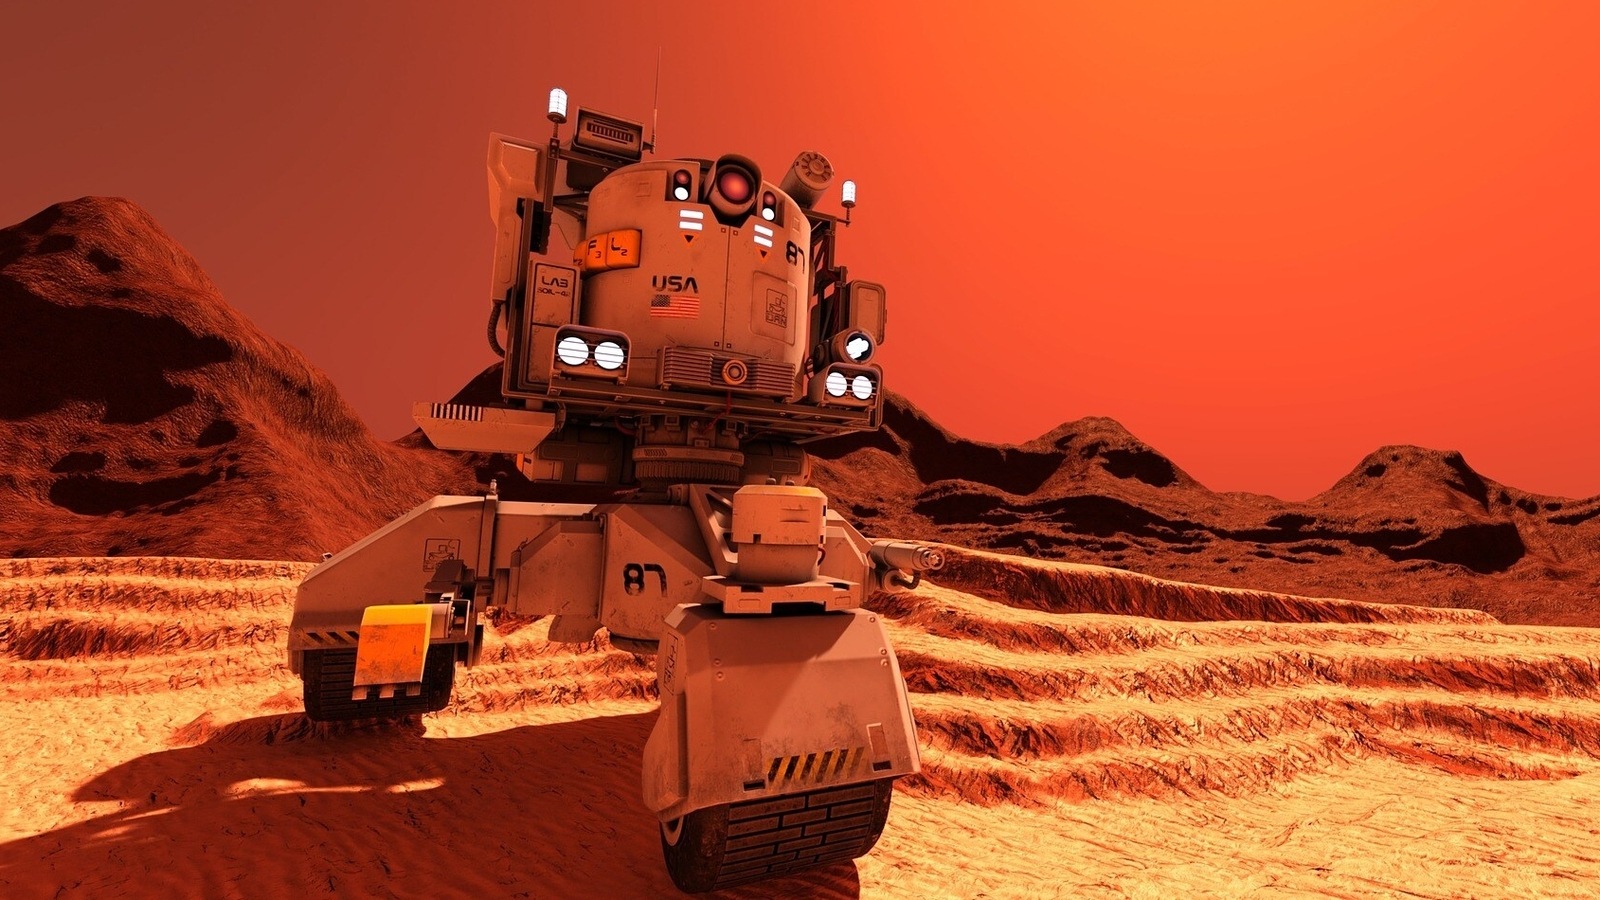 Vie sur Mars? Le rover Curiosity de la NASA découvre des signes dramatiques de vie sur la planète rouge